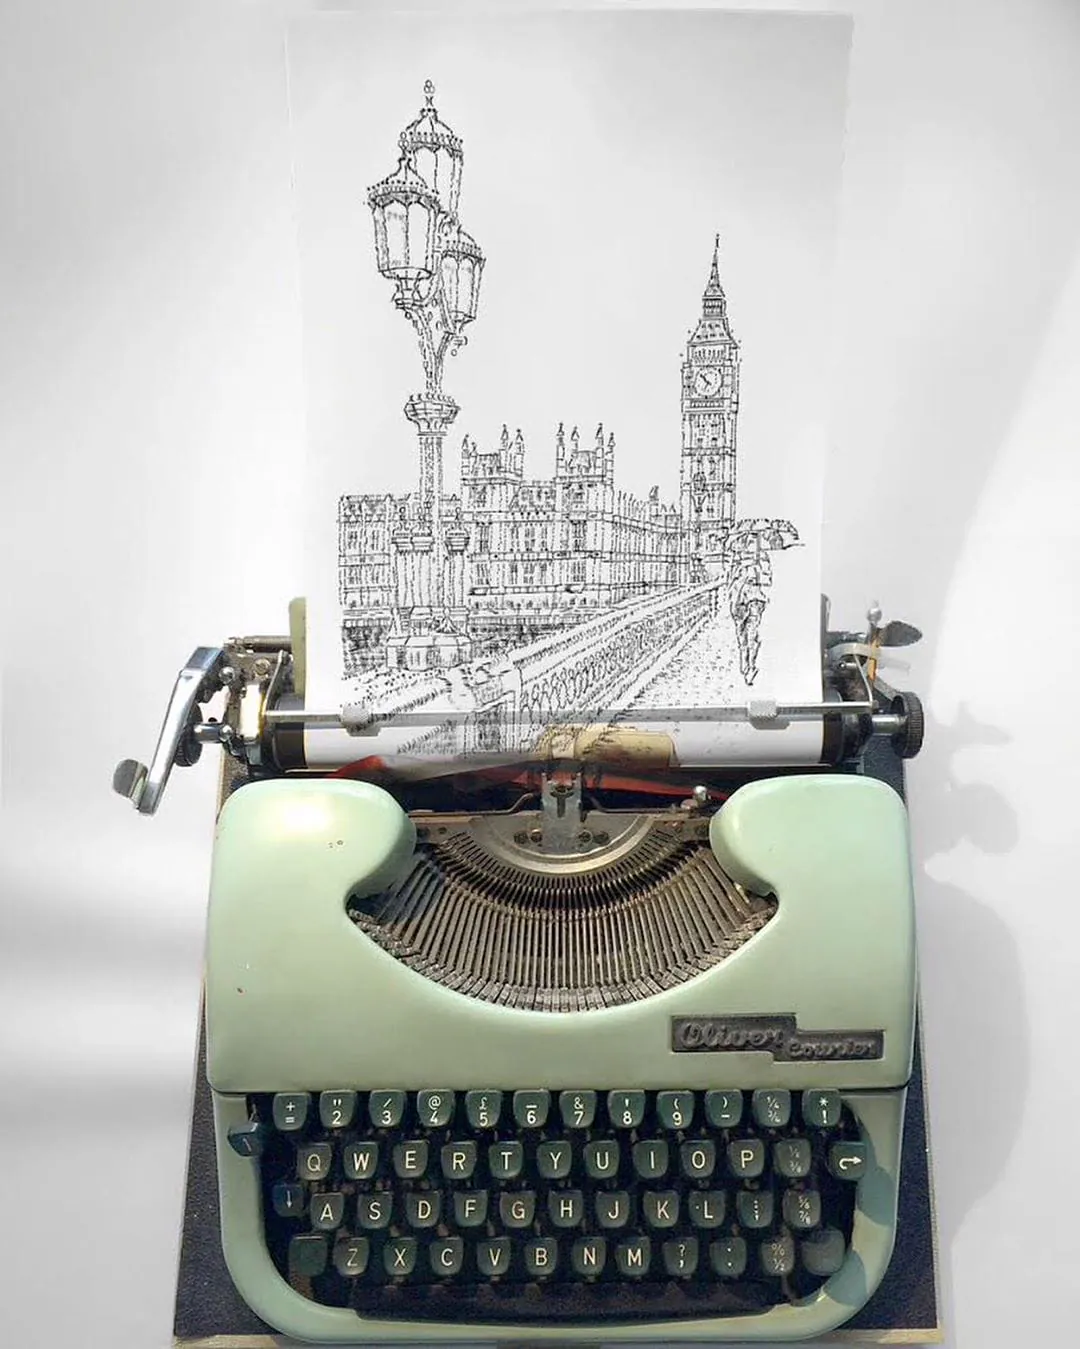 L'artiste James Cook dessine en tapant sur sa machine à écrire